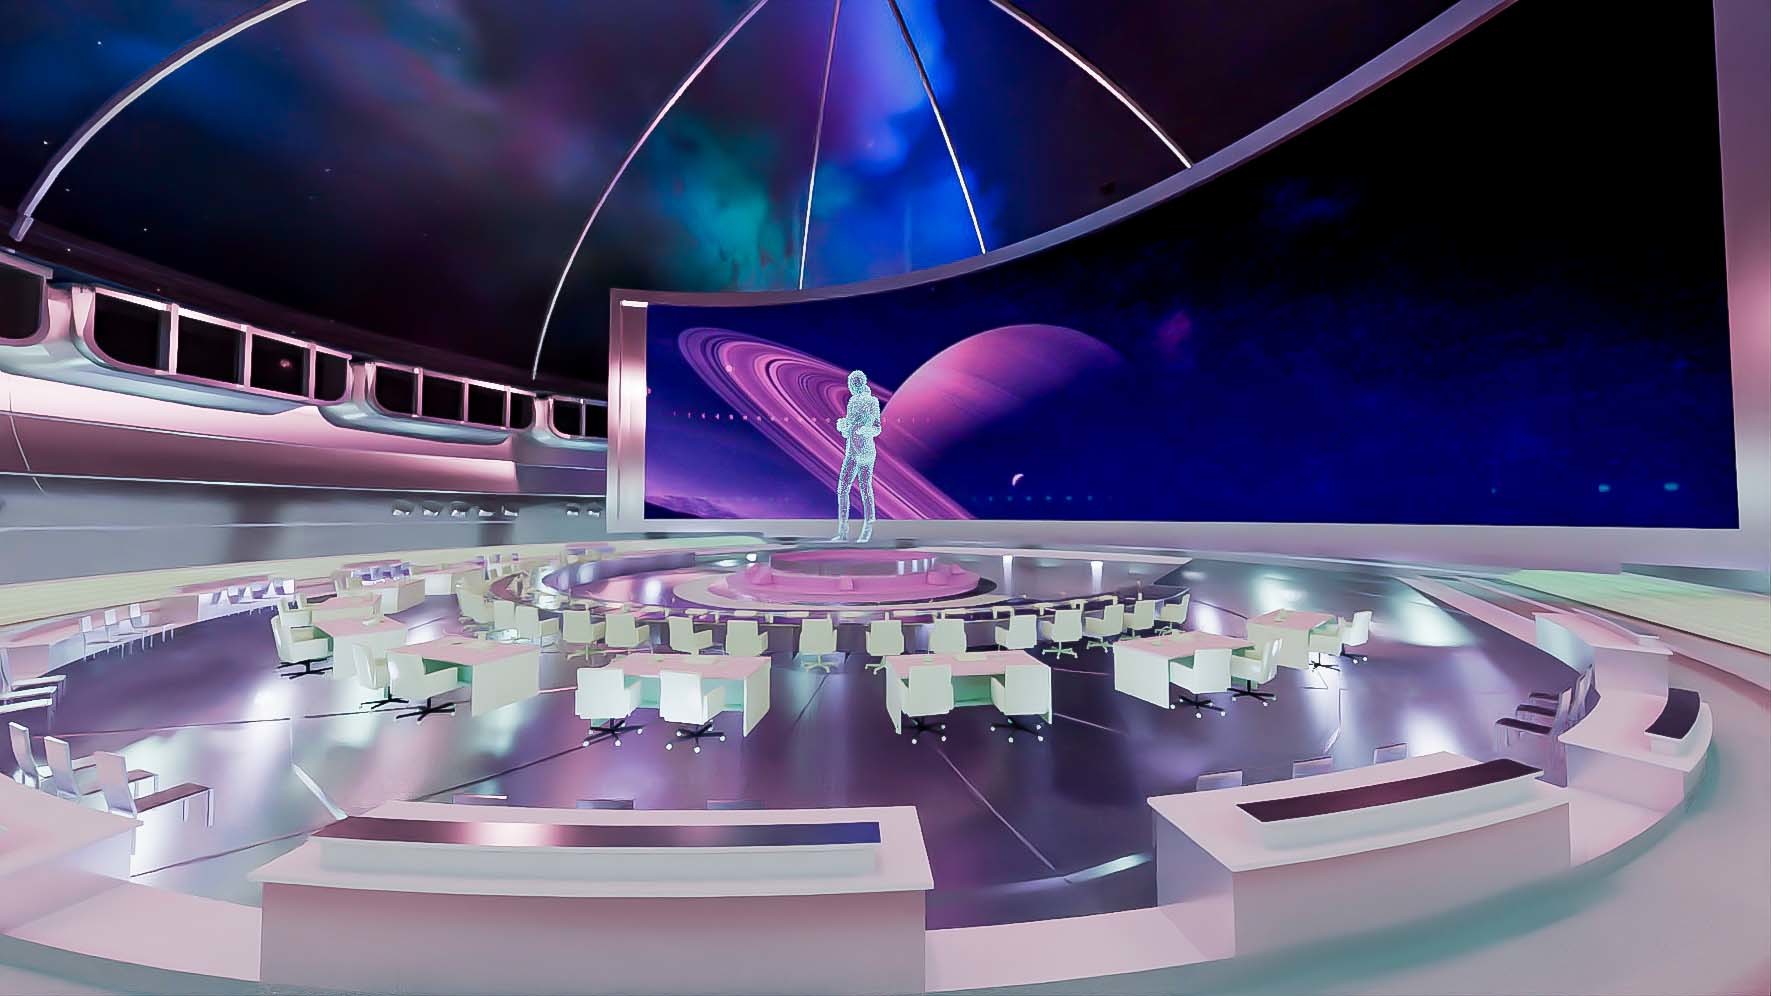 这是一张展示未来风格会议室的图片，中间有全息投影，周围是座椅，背景是宇宙星空和行星，整体色彩科幻。